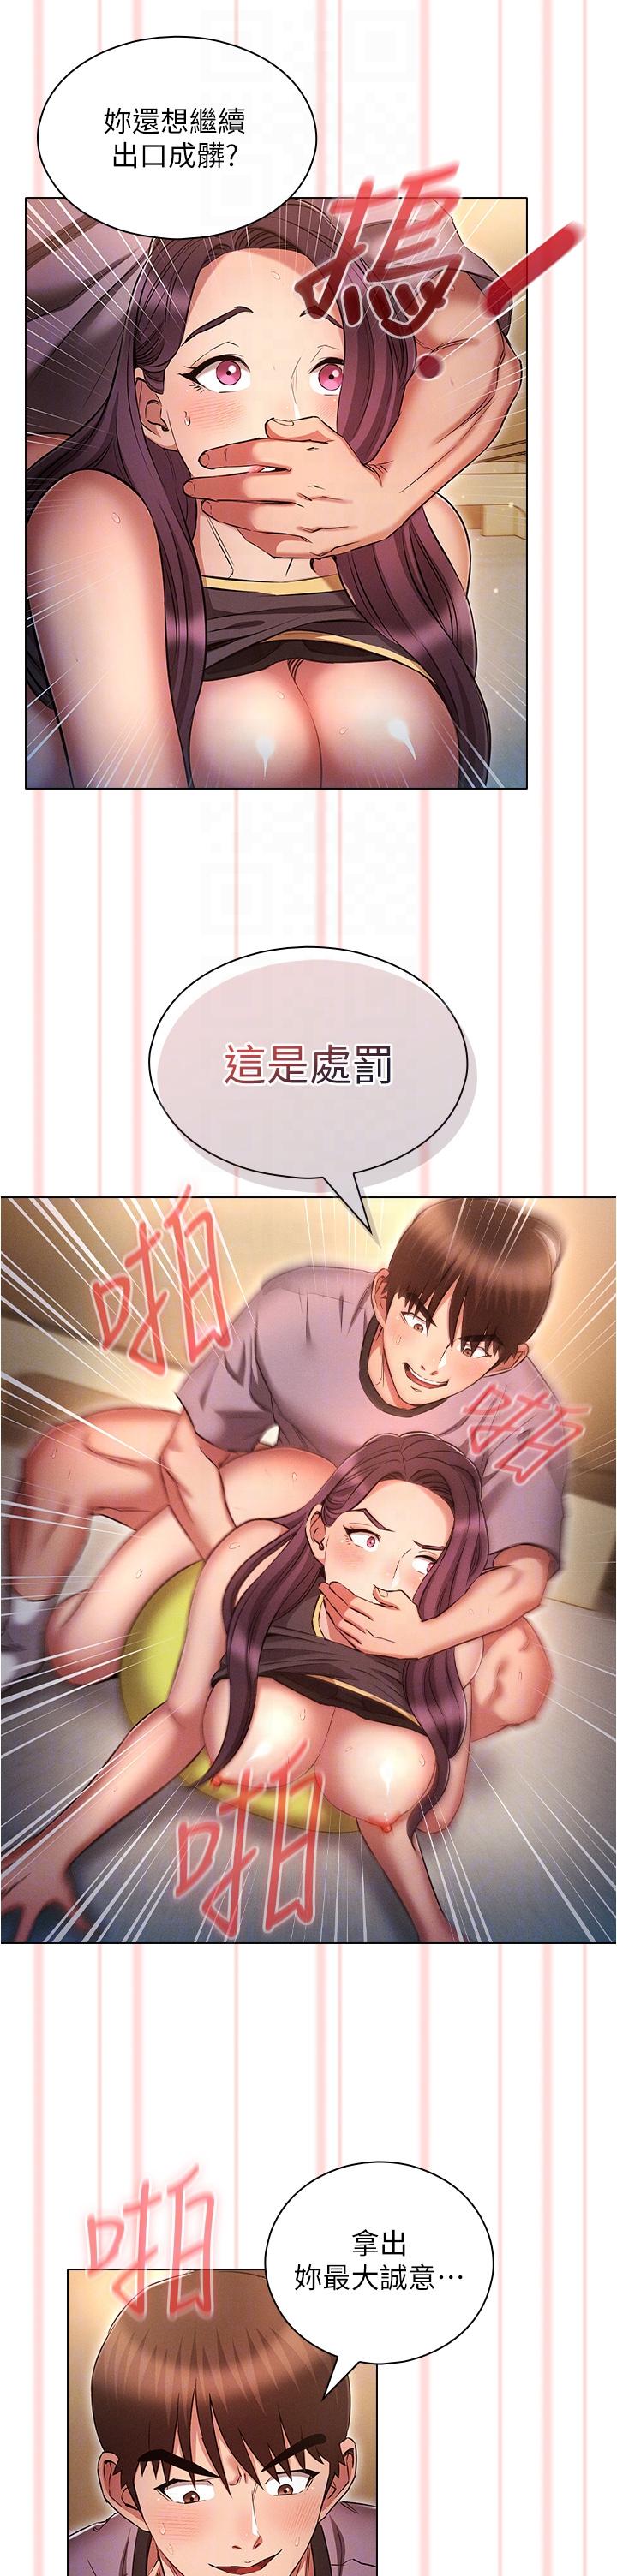 韩国污漫画 魯蛇的多重宇宙 第39话-被当狗操爽吗？ 30